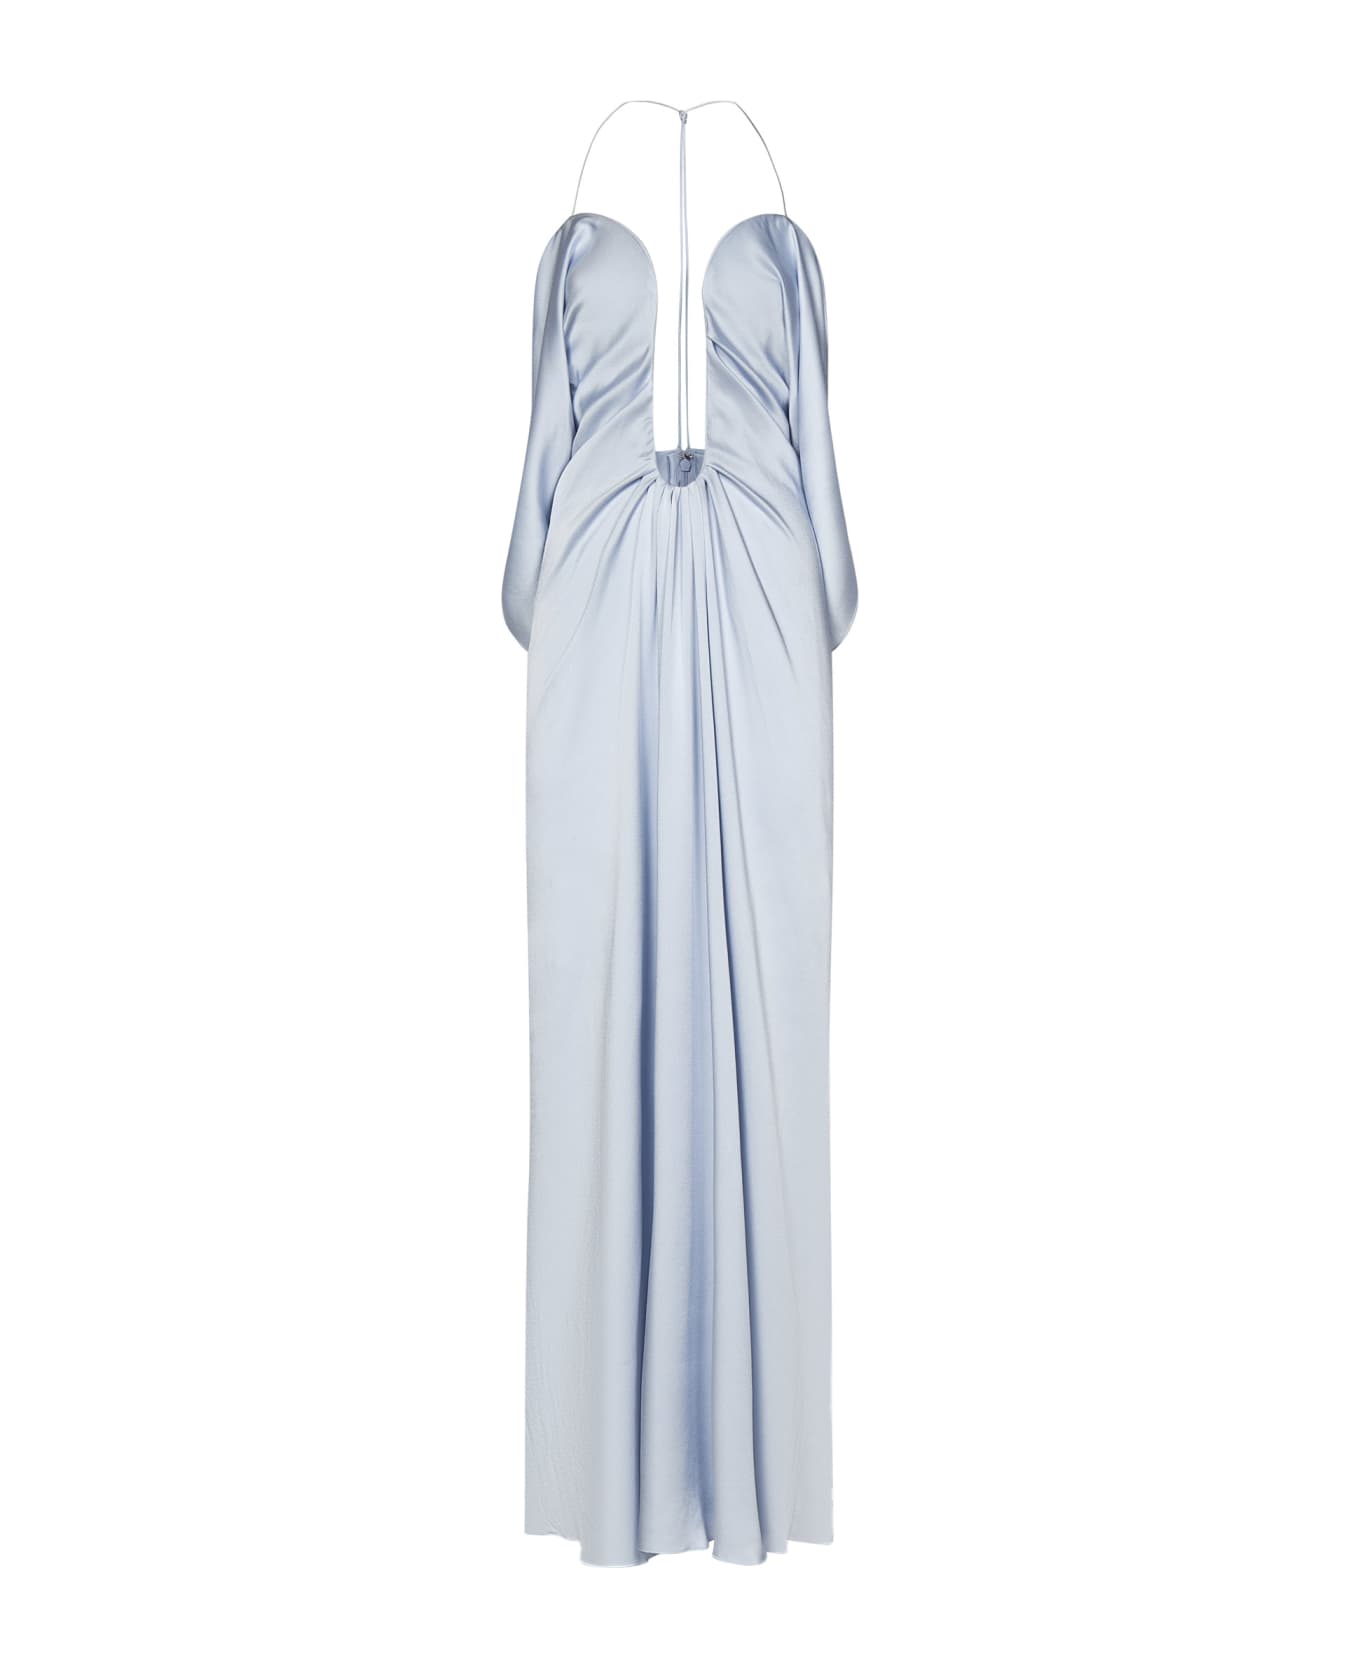 Victoria Beckham Frame Detail Cami Dress Long Dress - Light blue